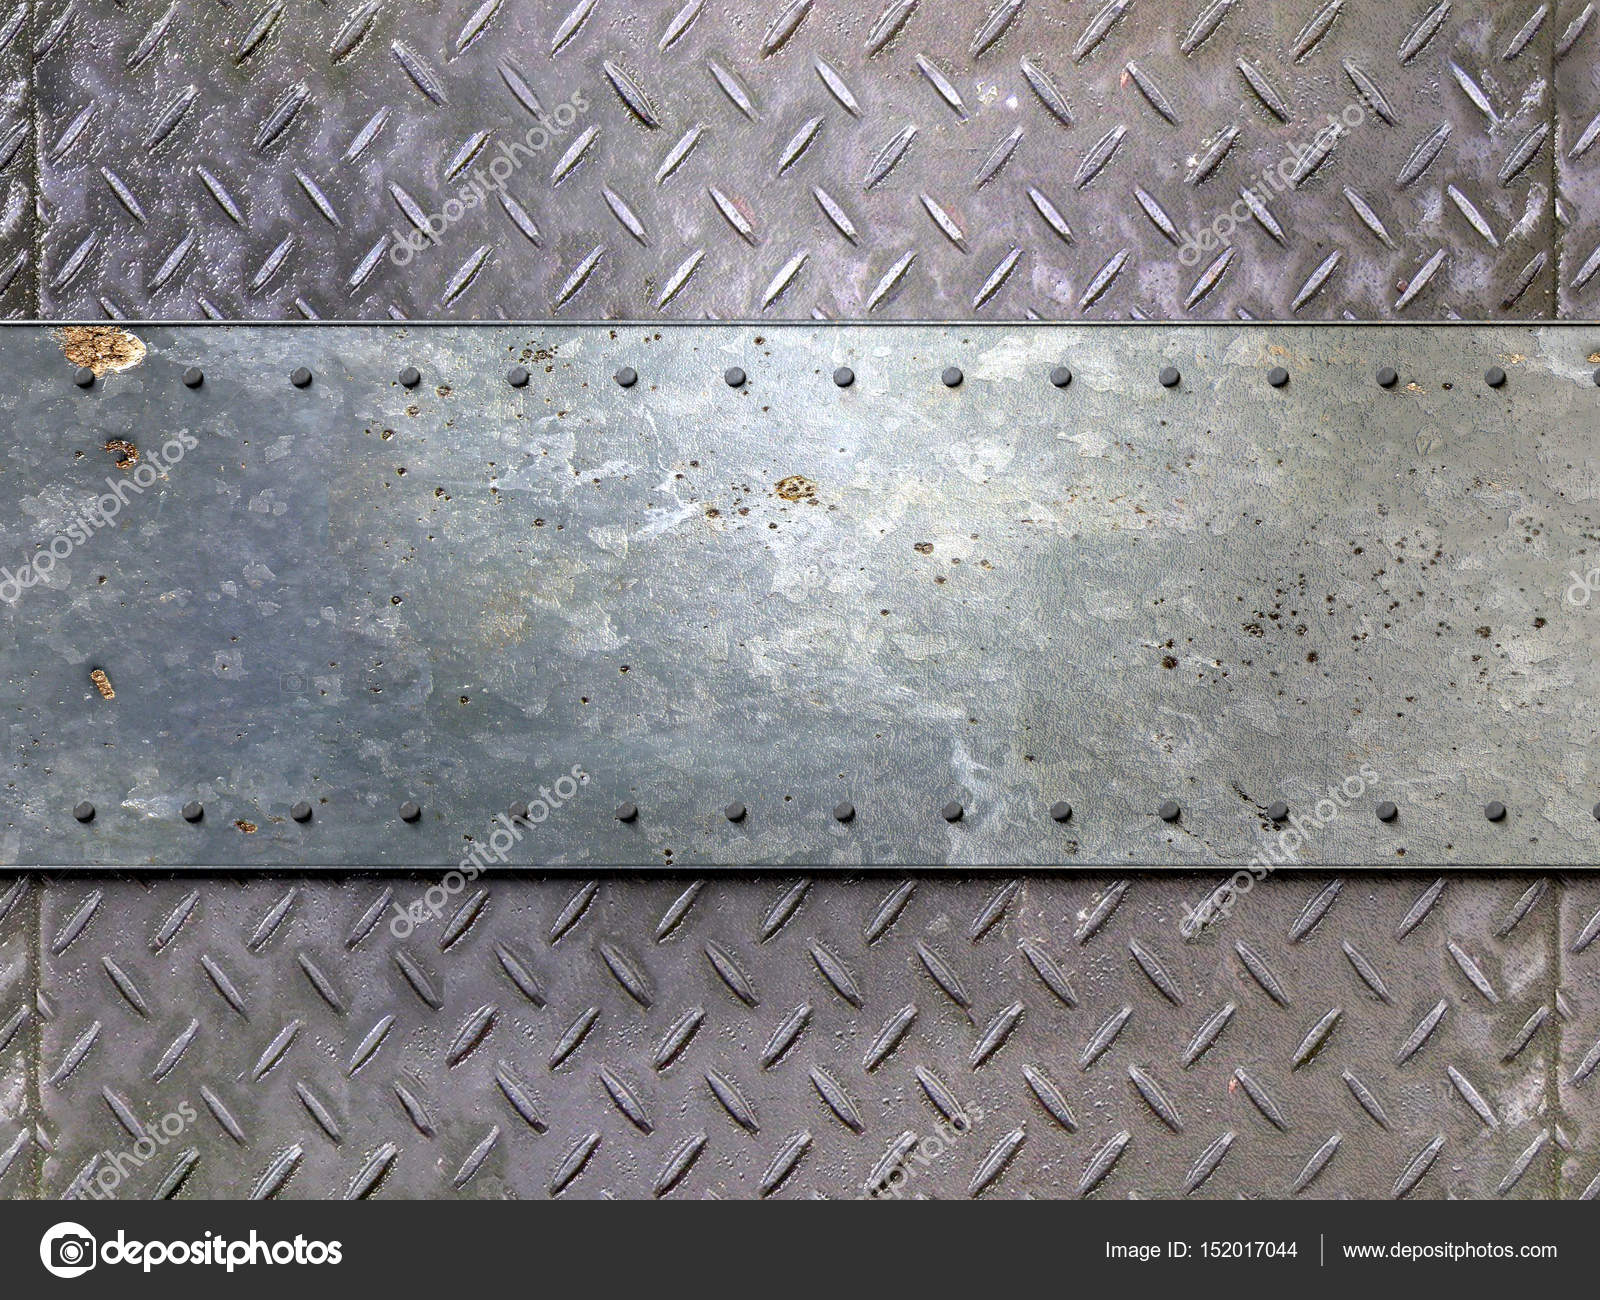 Top 46+ hình ảnh metal rivet background - thpthoangvanthu.edu.vn